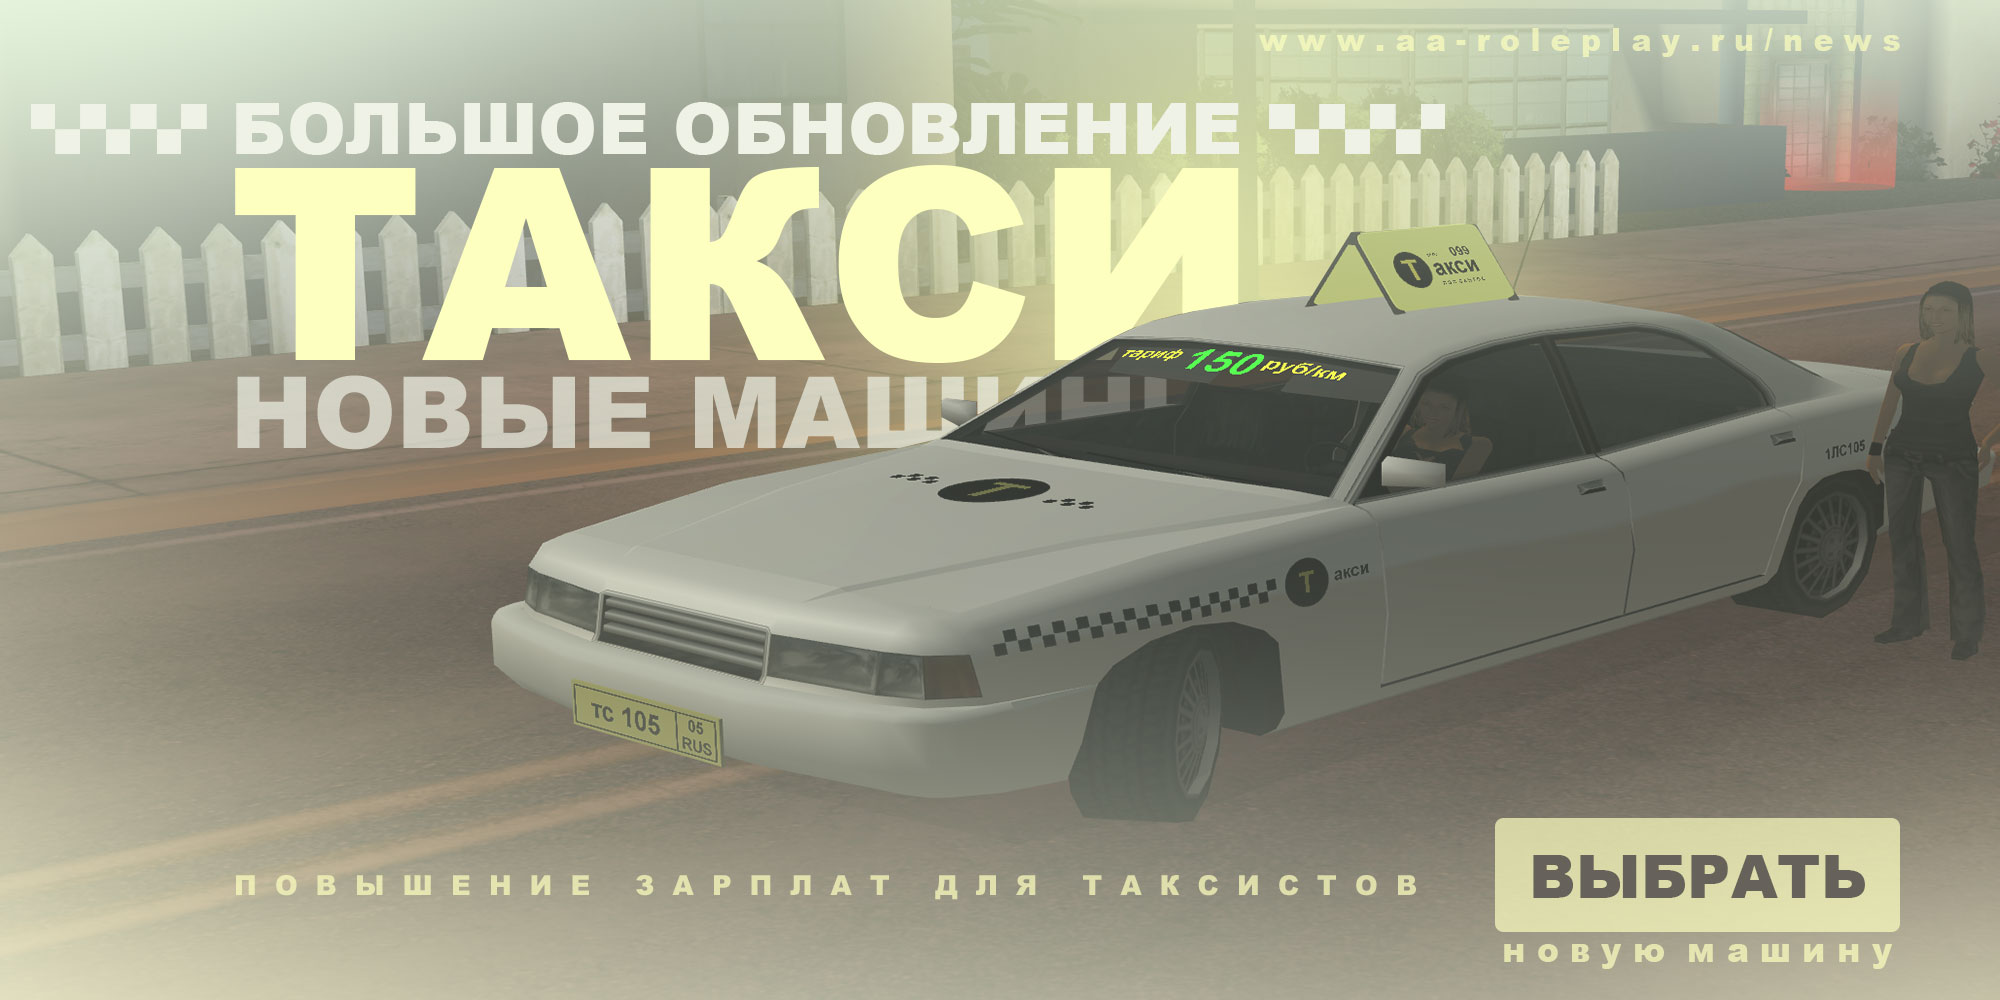 Постер большого обновления - Новые машины такси (177.89 КБ) Просмотров: 2012